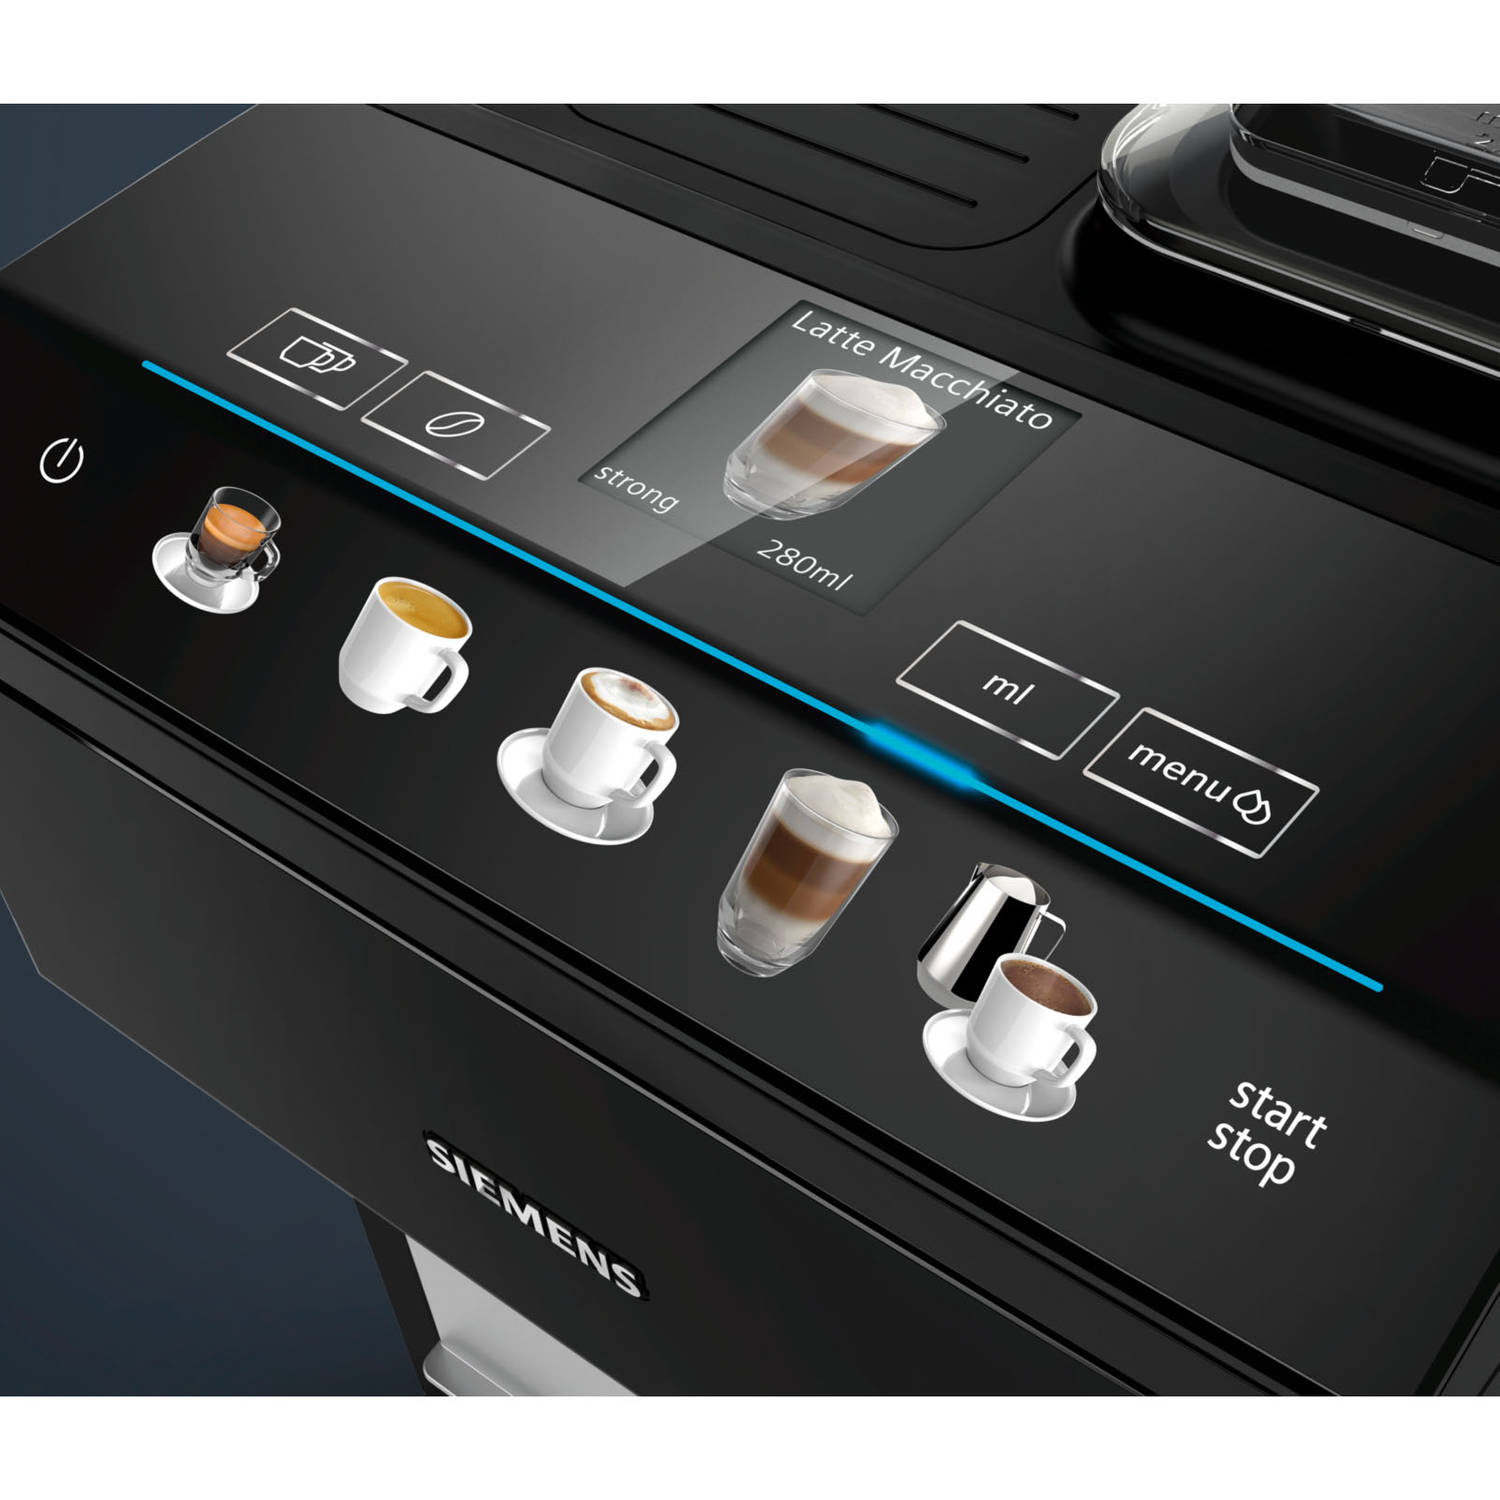 Gezag Aanzienlijk strip Siemens EQ.500 espresso apparaat TP503R09 | Blokker